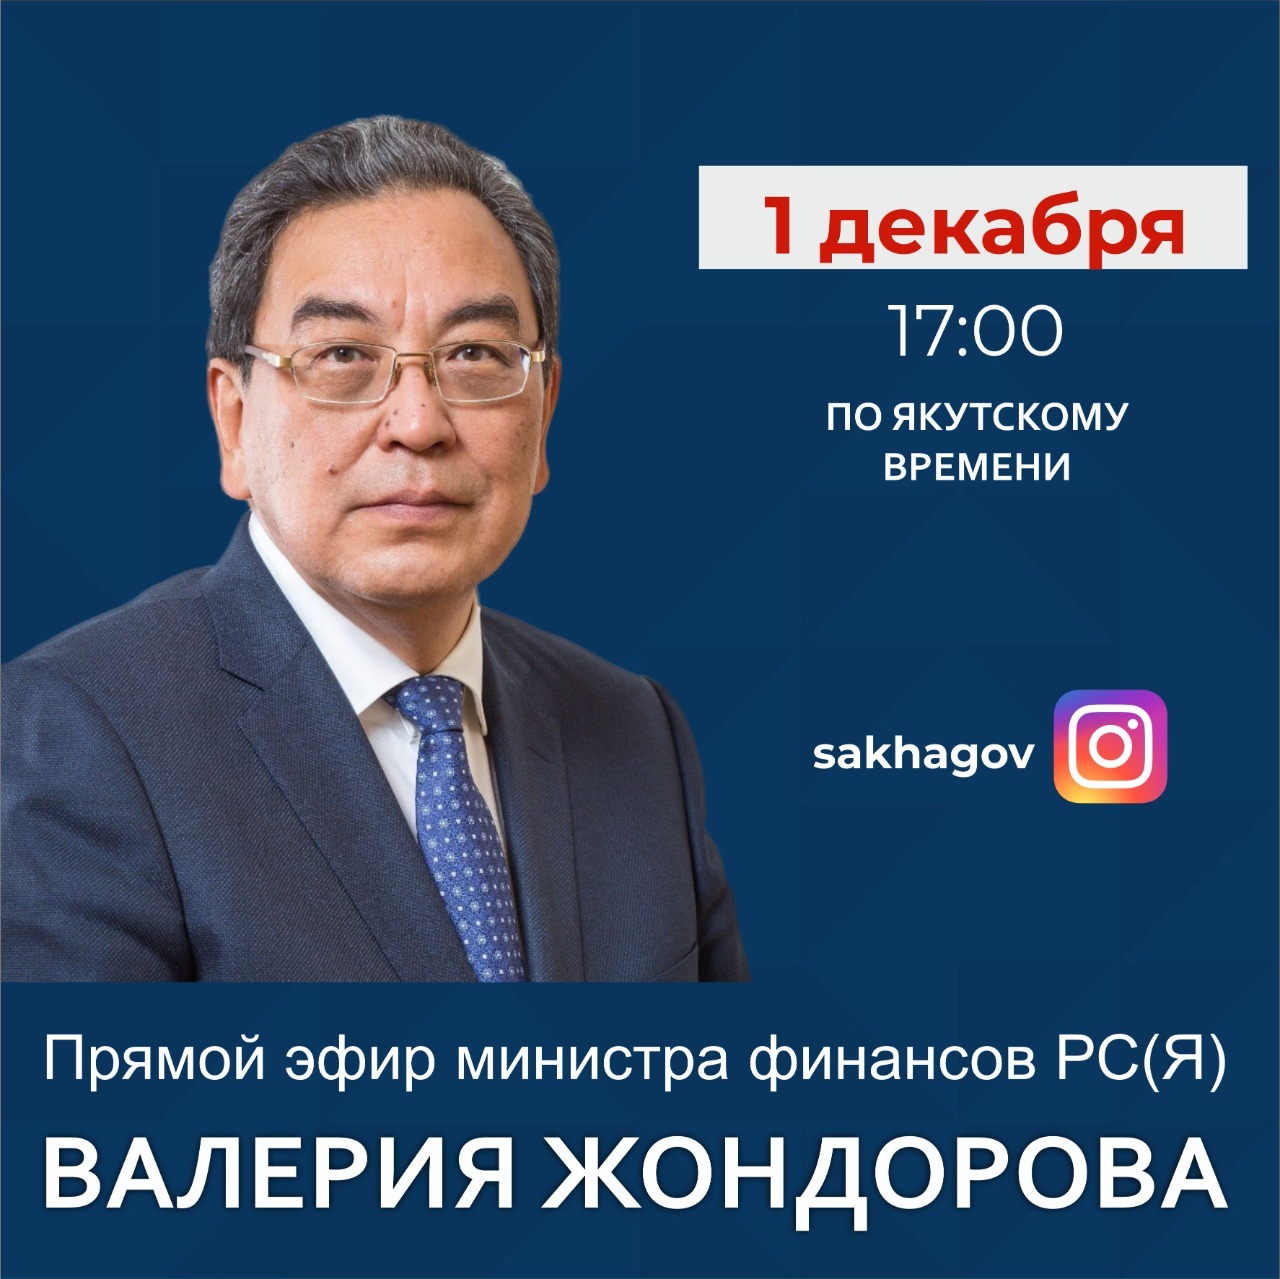 Министр финансов Якутии проведет прямой эфир в соцсетях